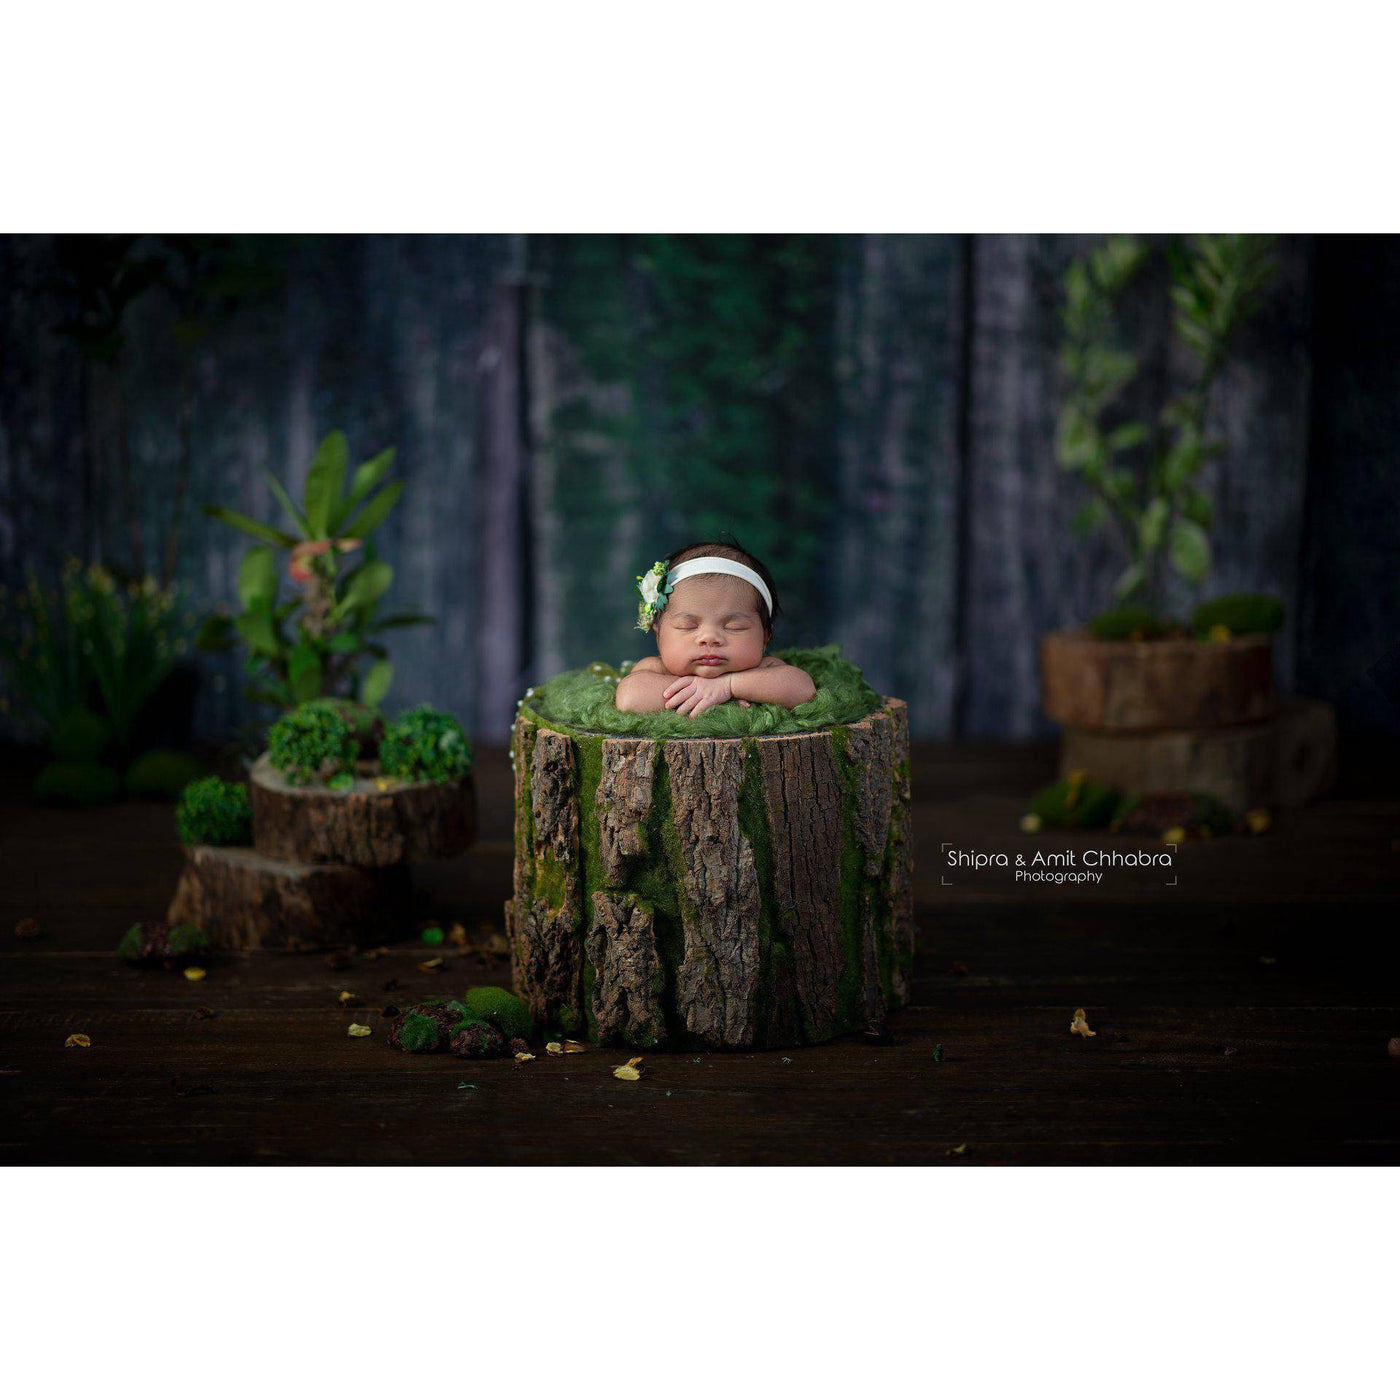 Green Newborn Fluff Cloud Basket Filler Nest Stuffer - Beautiful Photo Props